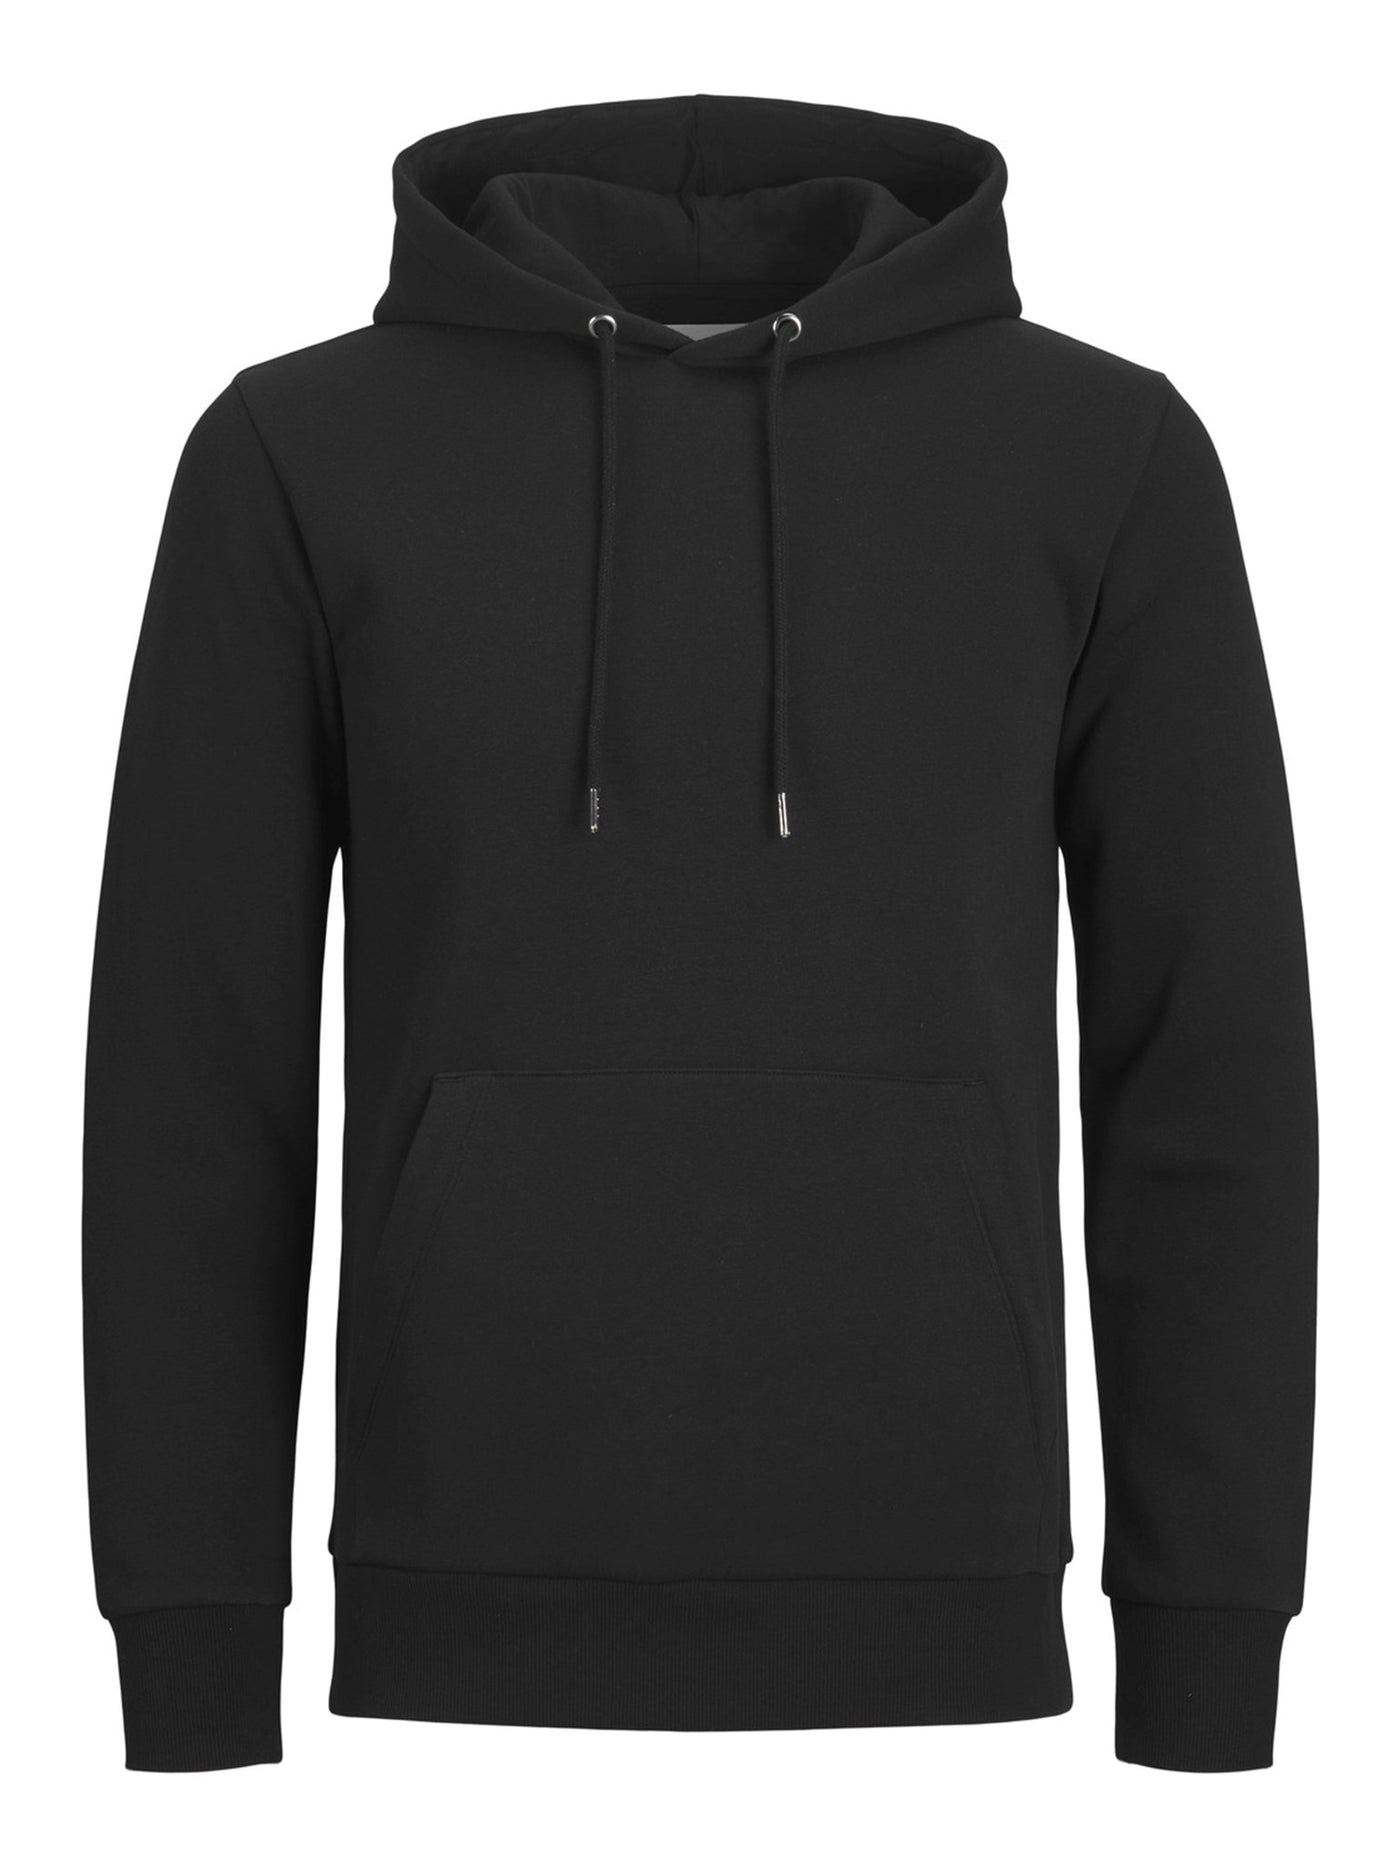 Basic Sweatsuit w. Hoodie (Black) - Package Deal